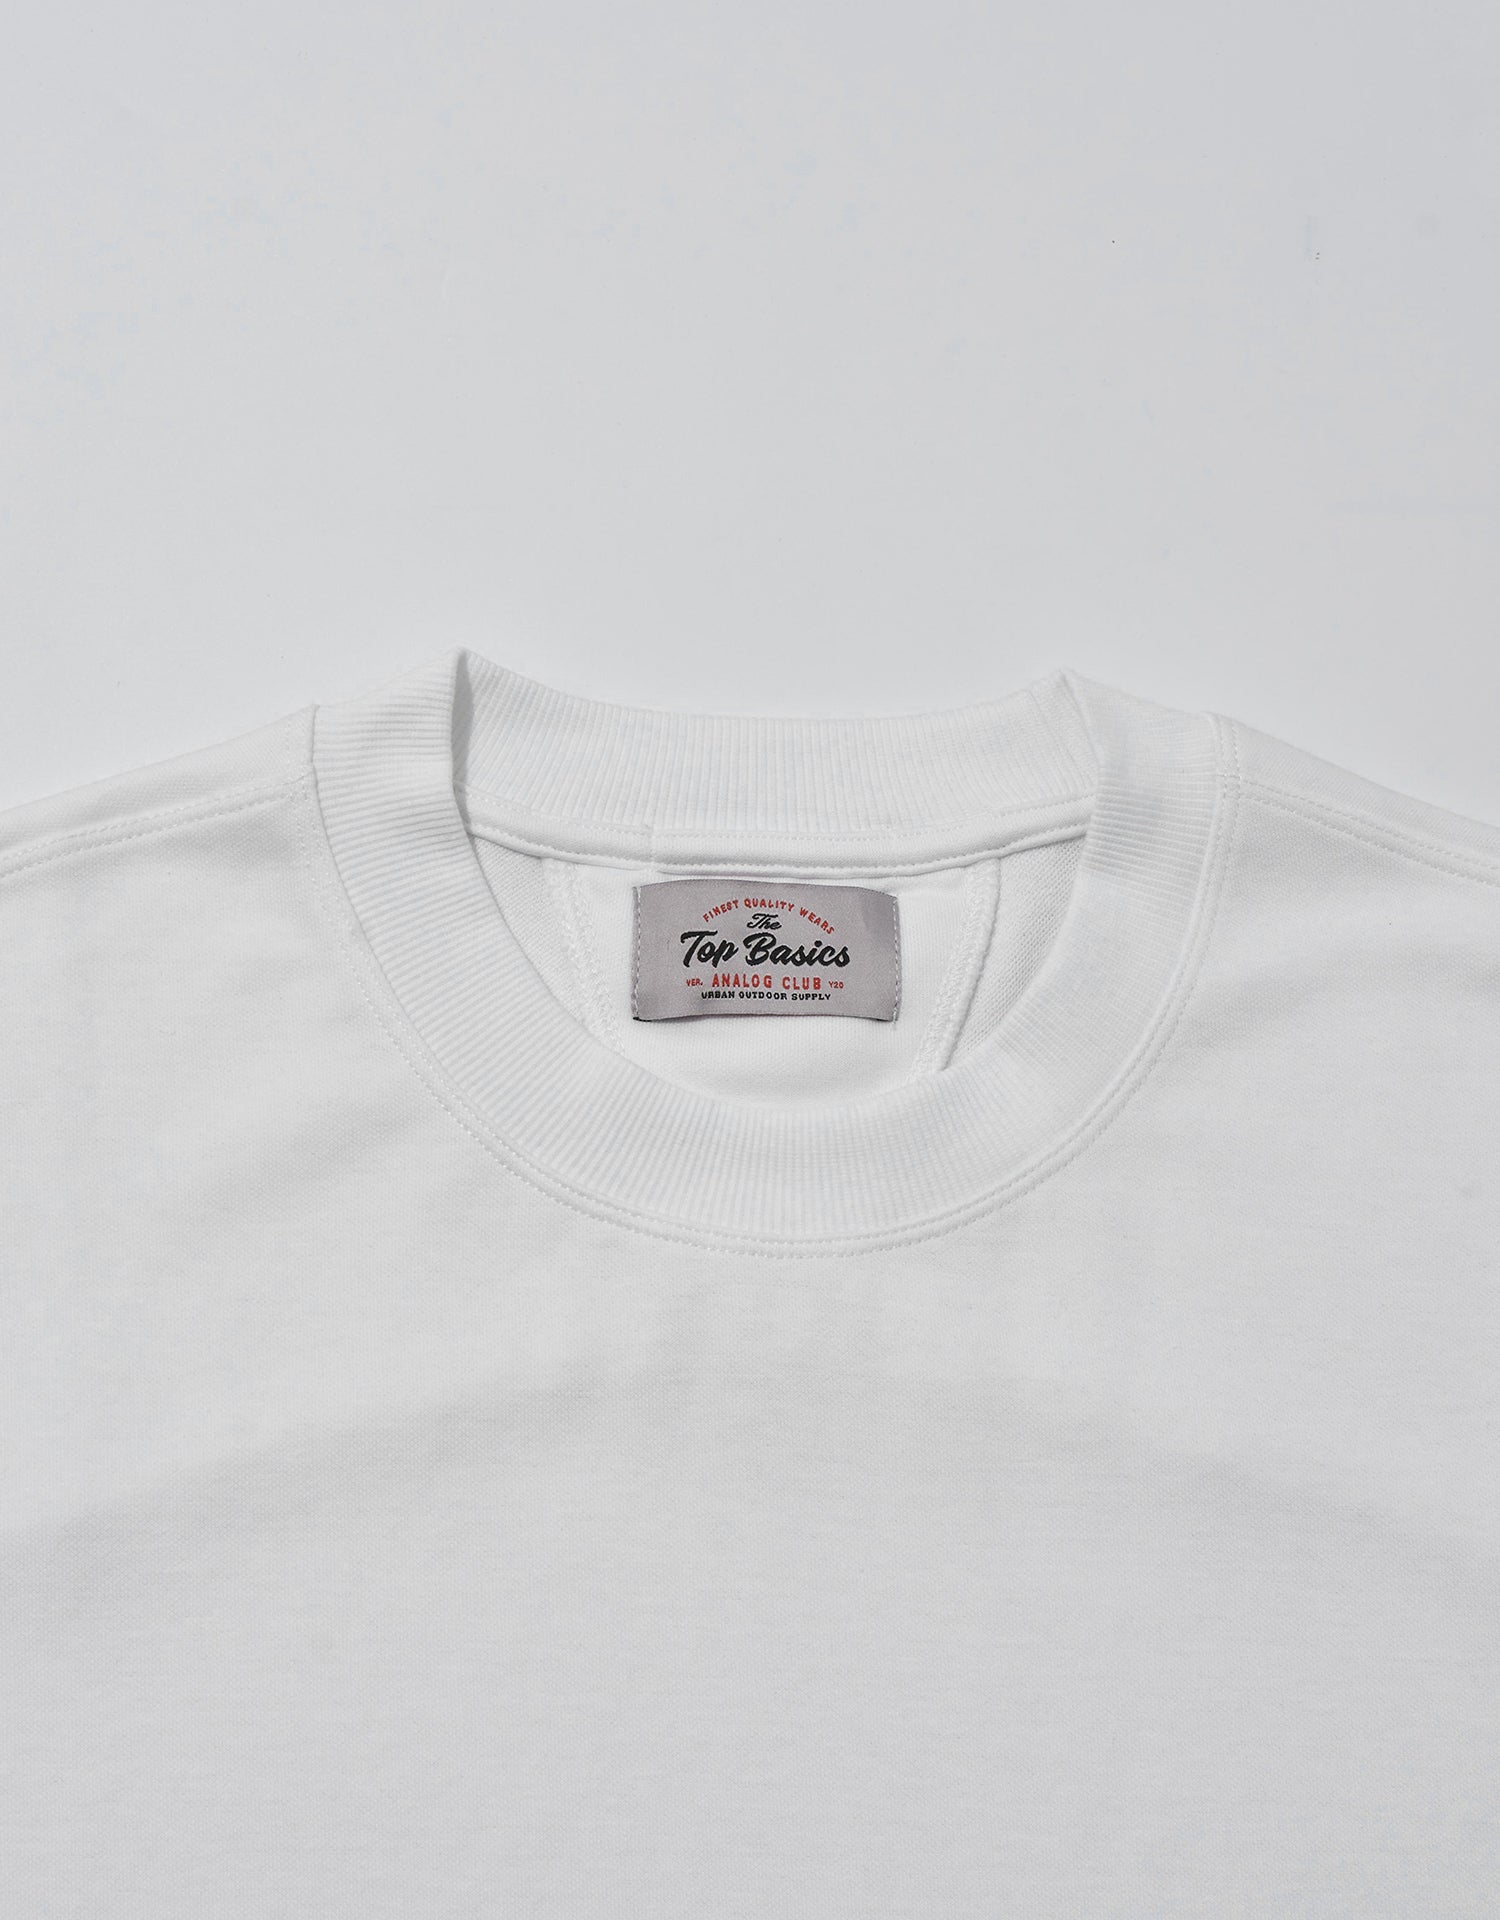 TopBasics Patch Stitched T-Shirt